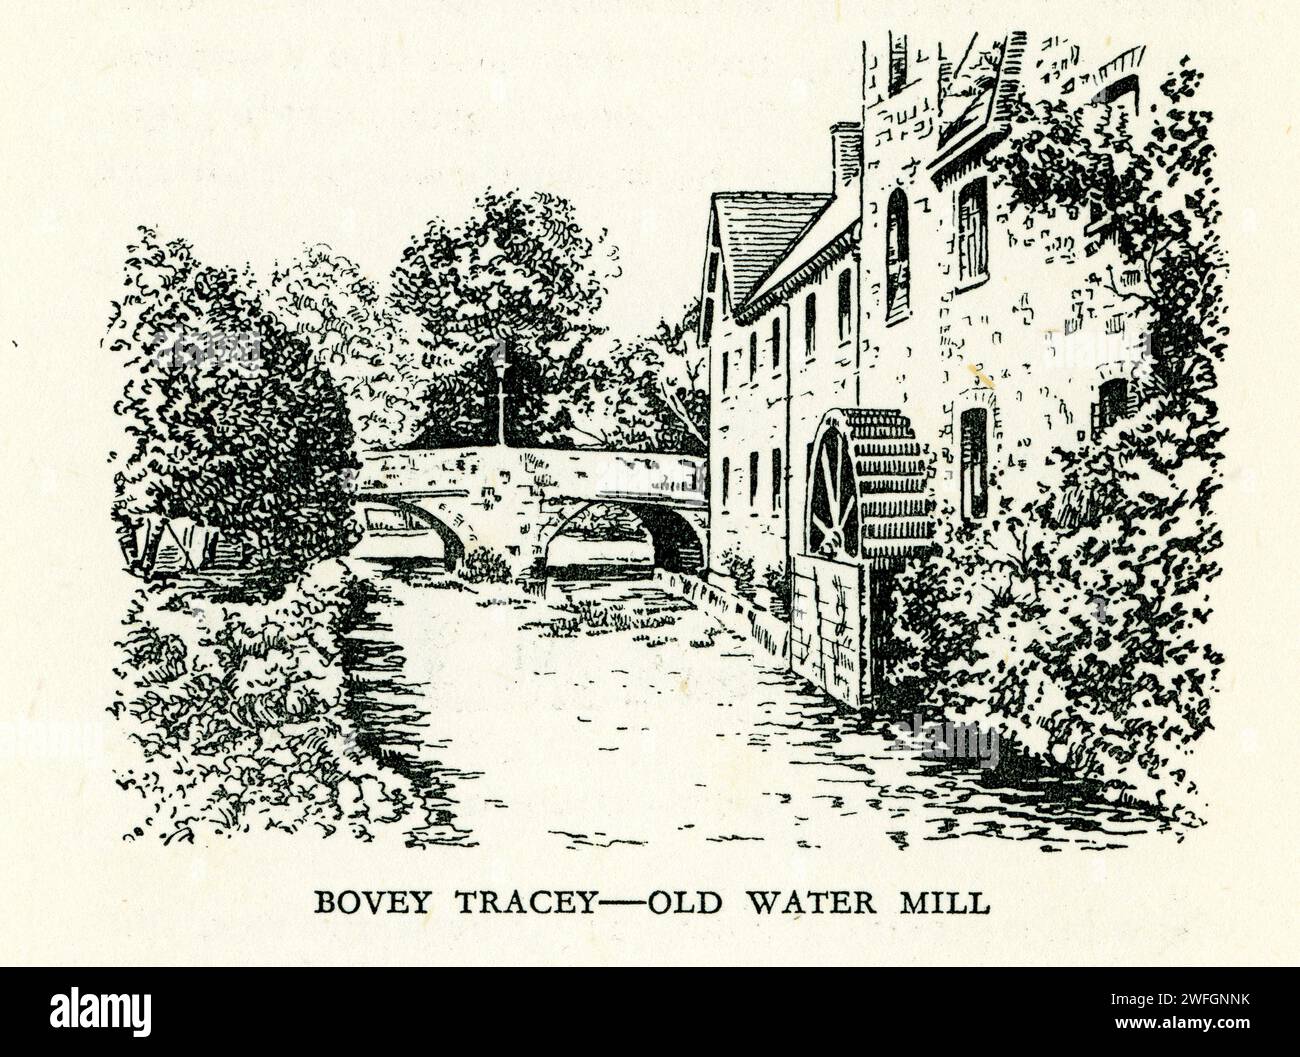 Schizzo a penna e inchiostro - Bovey Tracey Old Water Mill, Devon. Di S.P.B. Mais, pubblicato da London Great Western Railway Company, 1928 Foto Stock